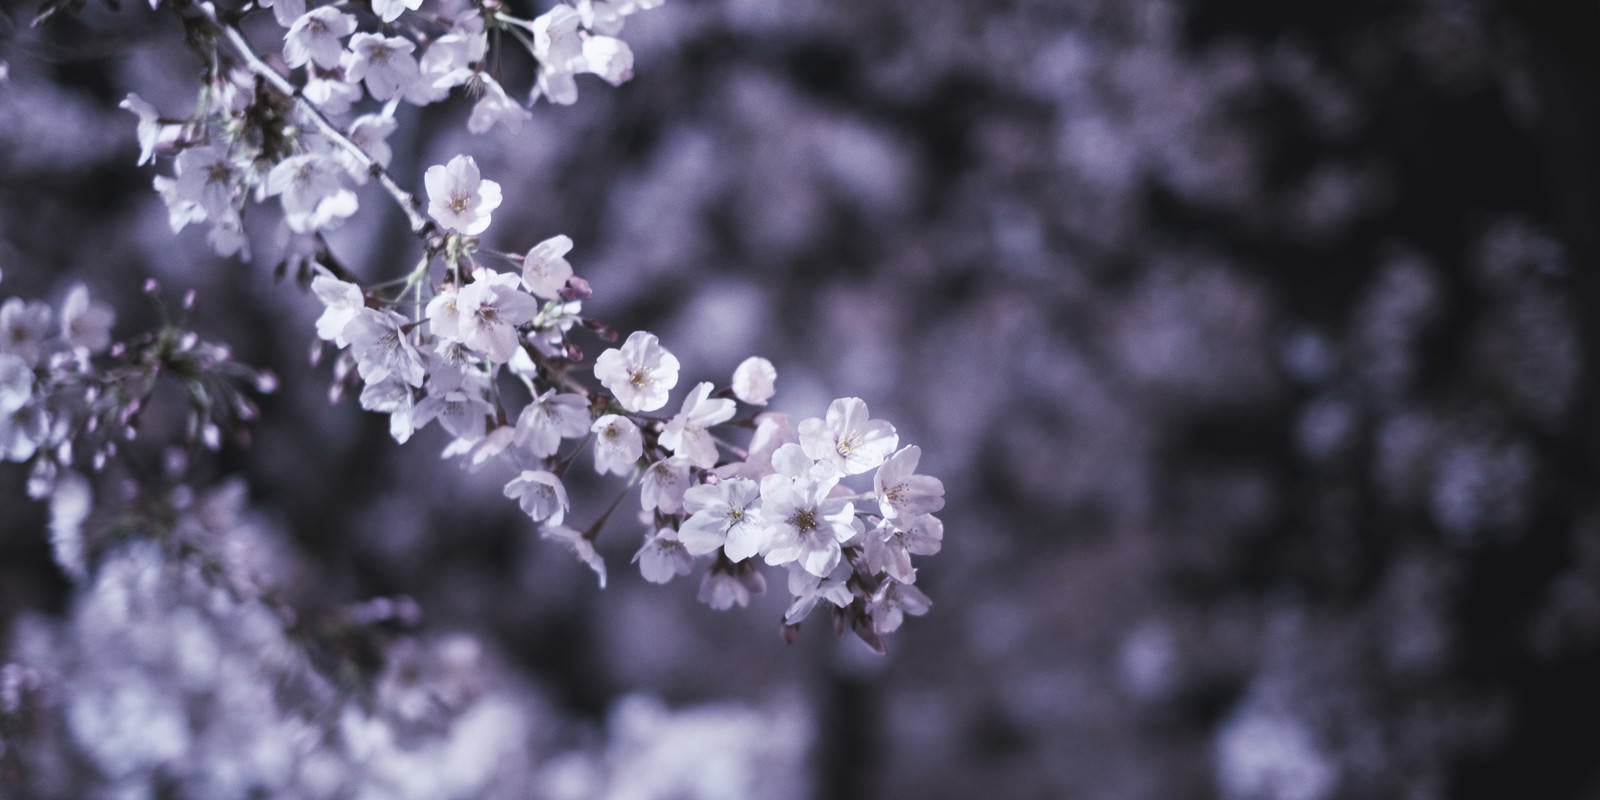 「開花した夜桜」の写真